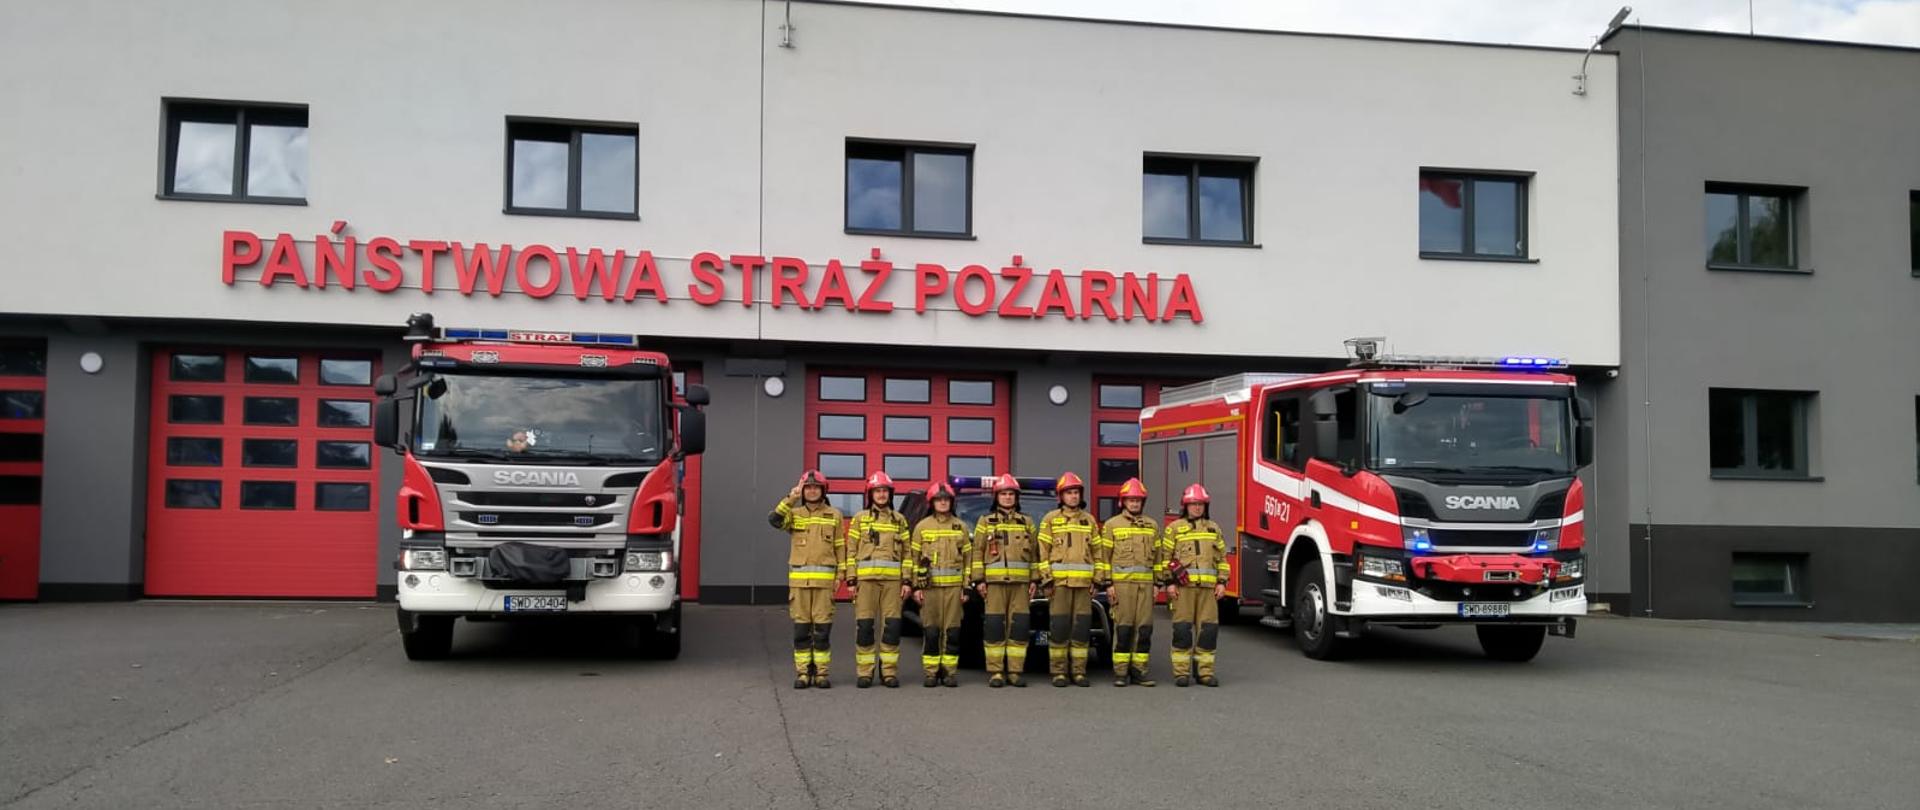 Na zdjęciu strażacy oddają hołd z okazji rocznicy Powstania Warszawskiego. W tle samochody pożarnicze oraz budynek JRG.